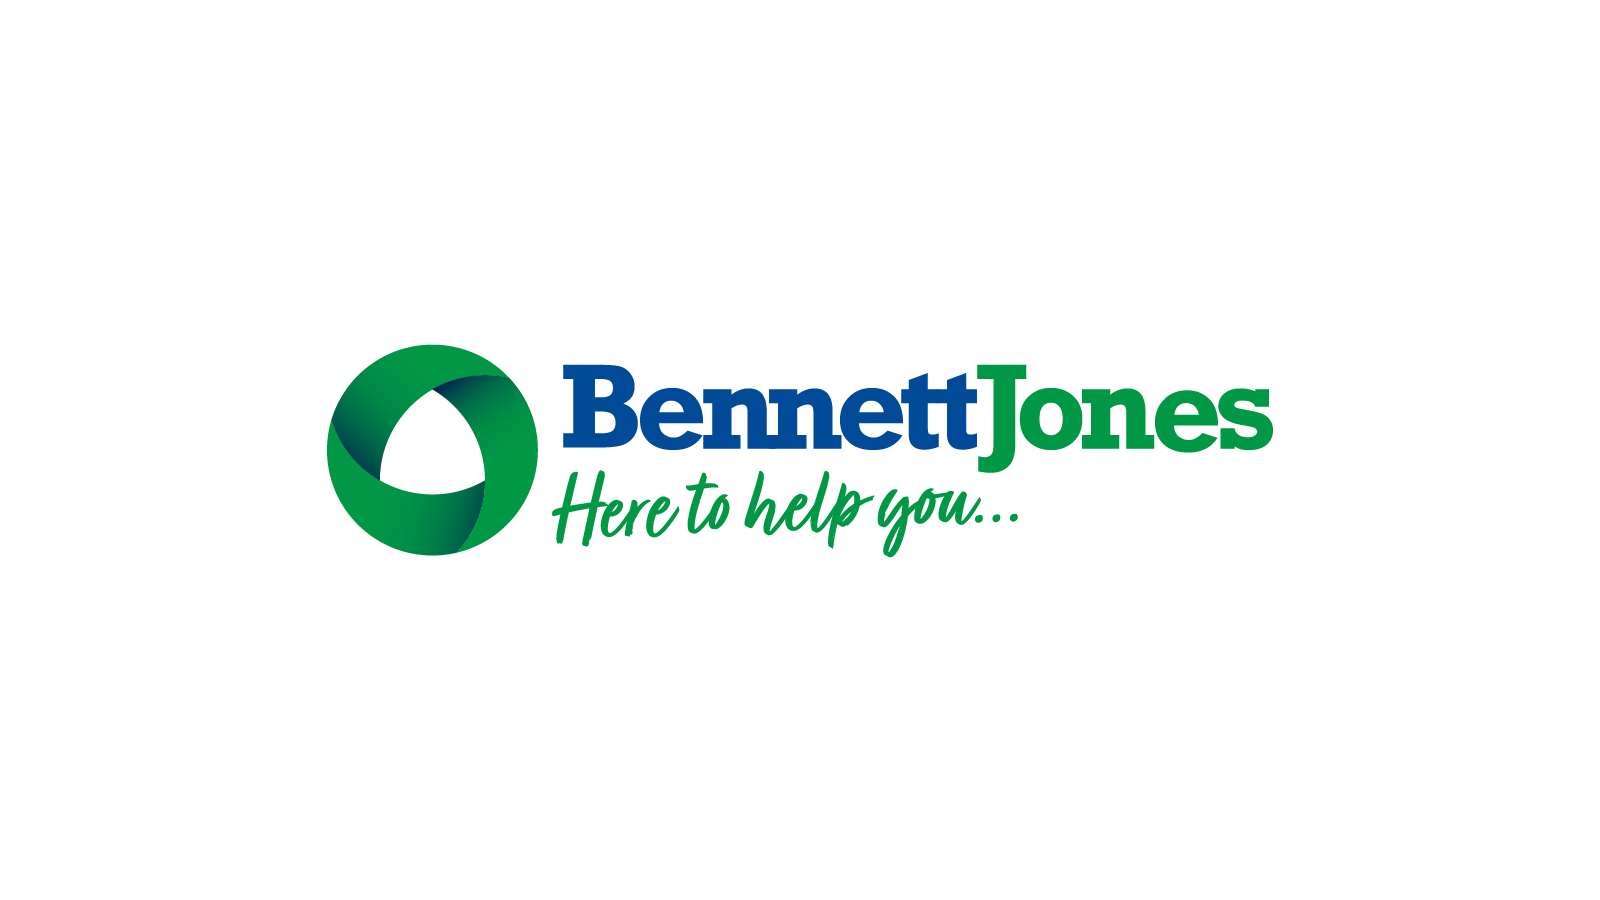 Bennett jones brand 13 1600x1200